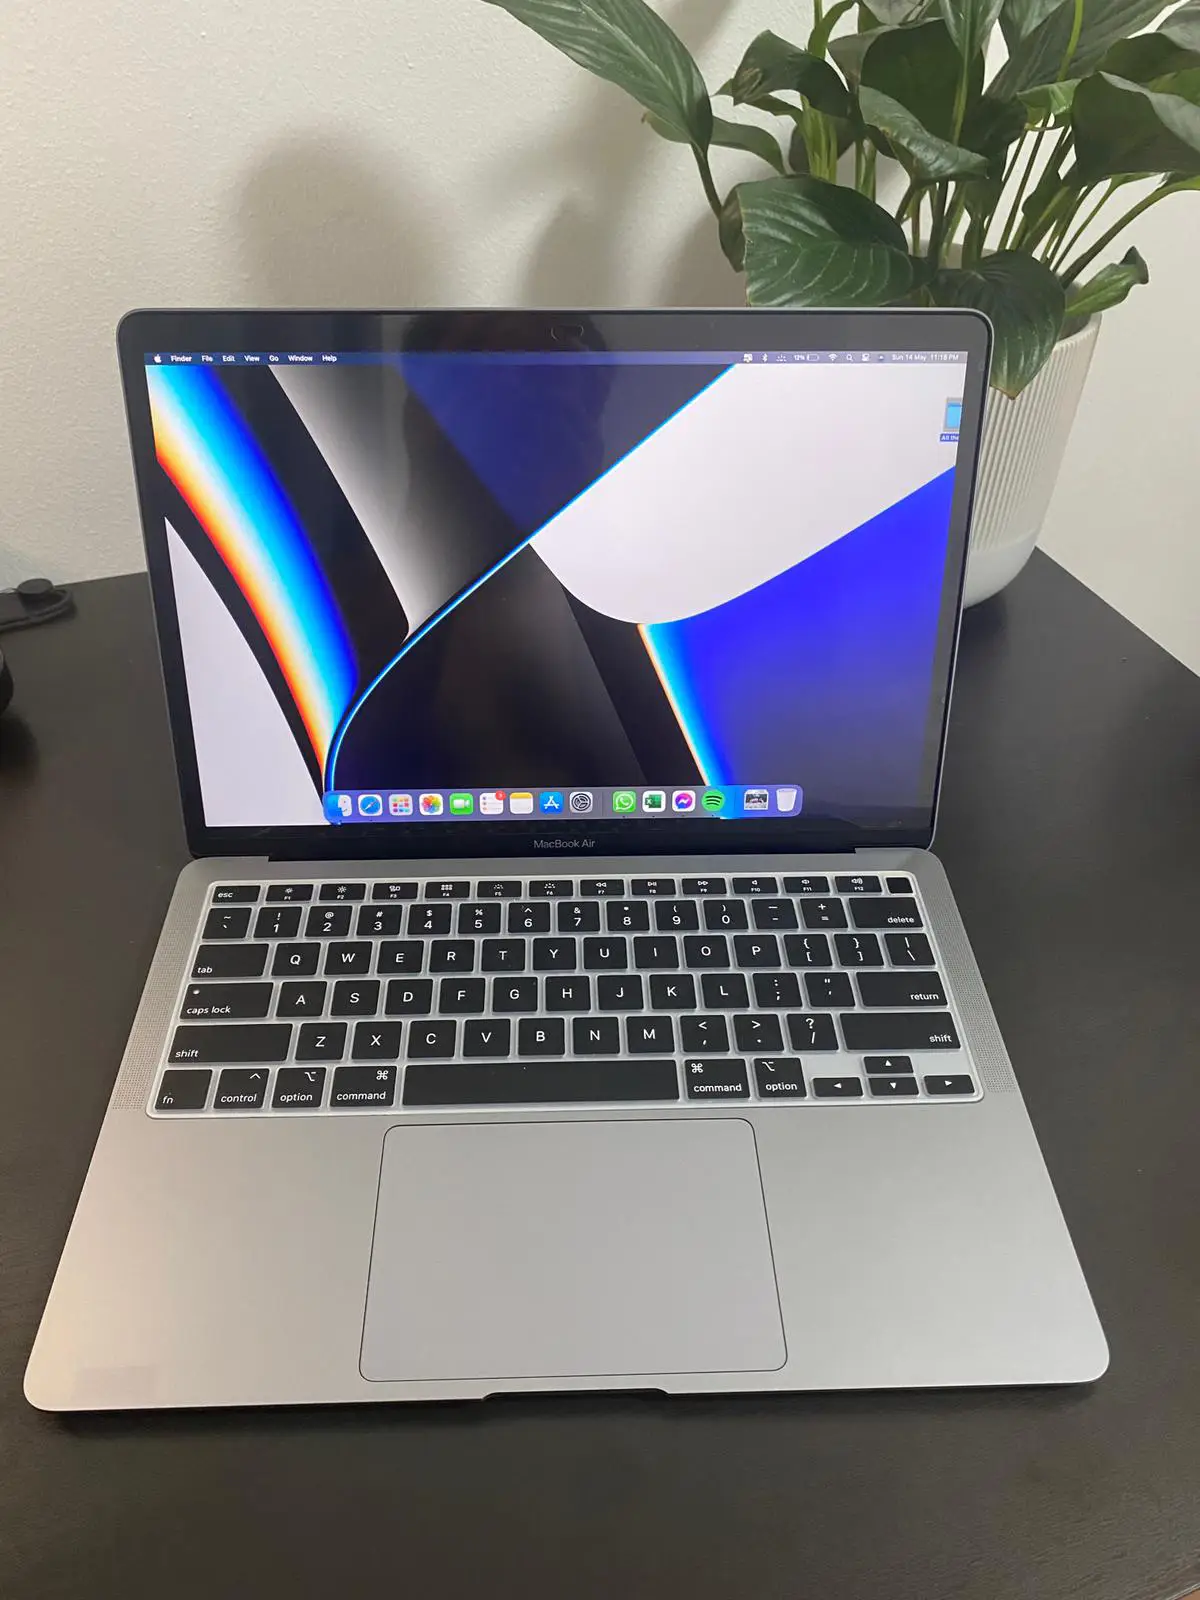 14 MacBook Pro vs M1 MacBook Air - Worth $1,000 MORE? 🤔 